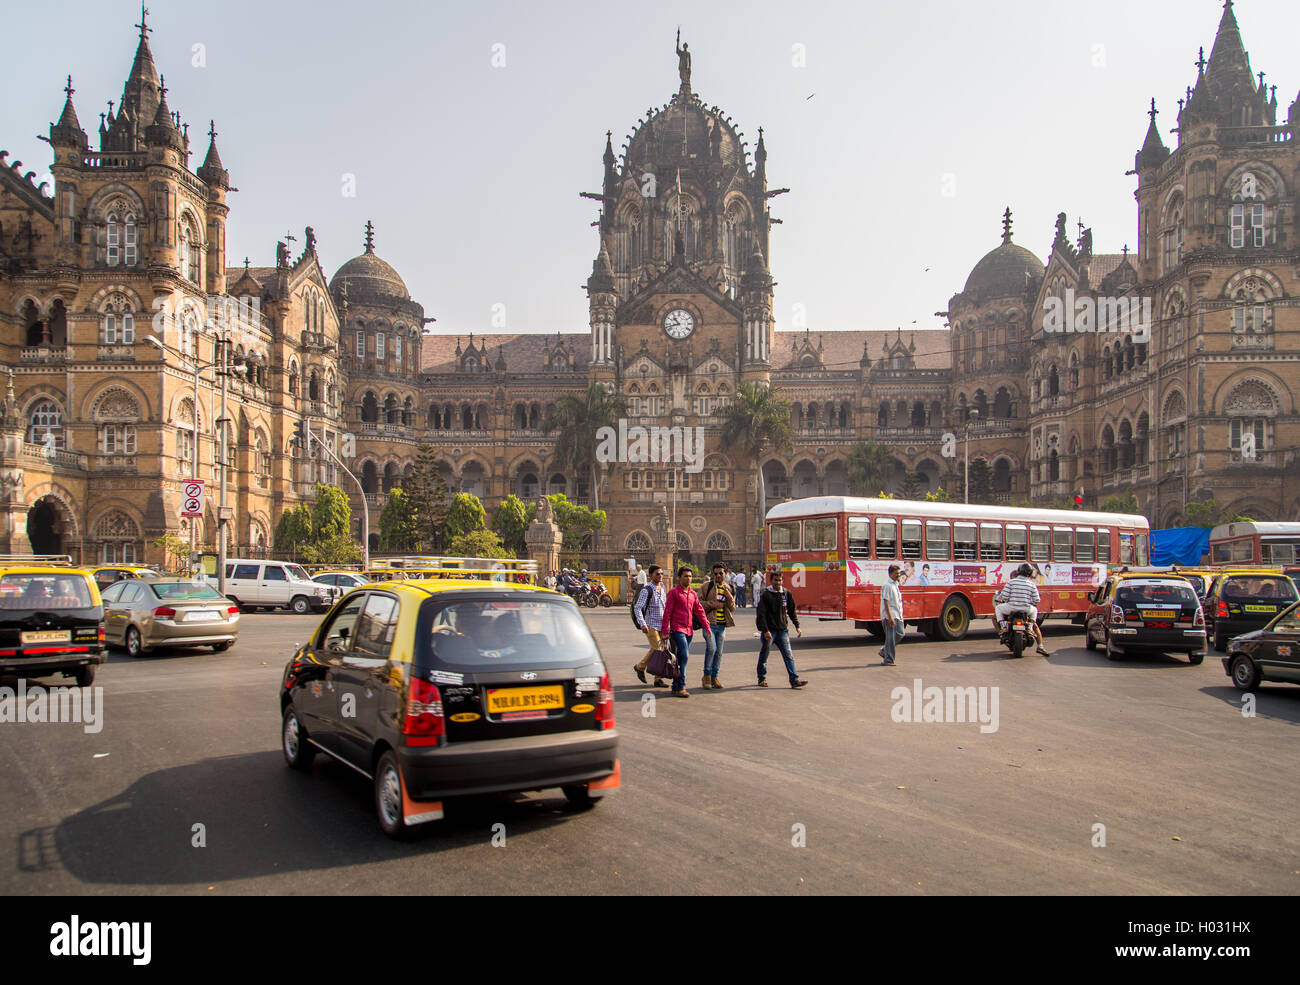 MUMBAI, INDE - 17 janvier 2015 : La gare Chhatrapati Shivaji est un site classé au patrimoine mondial et gare ferroviaire historique. Il s Banque D'Images